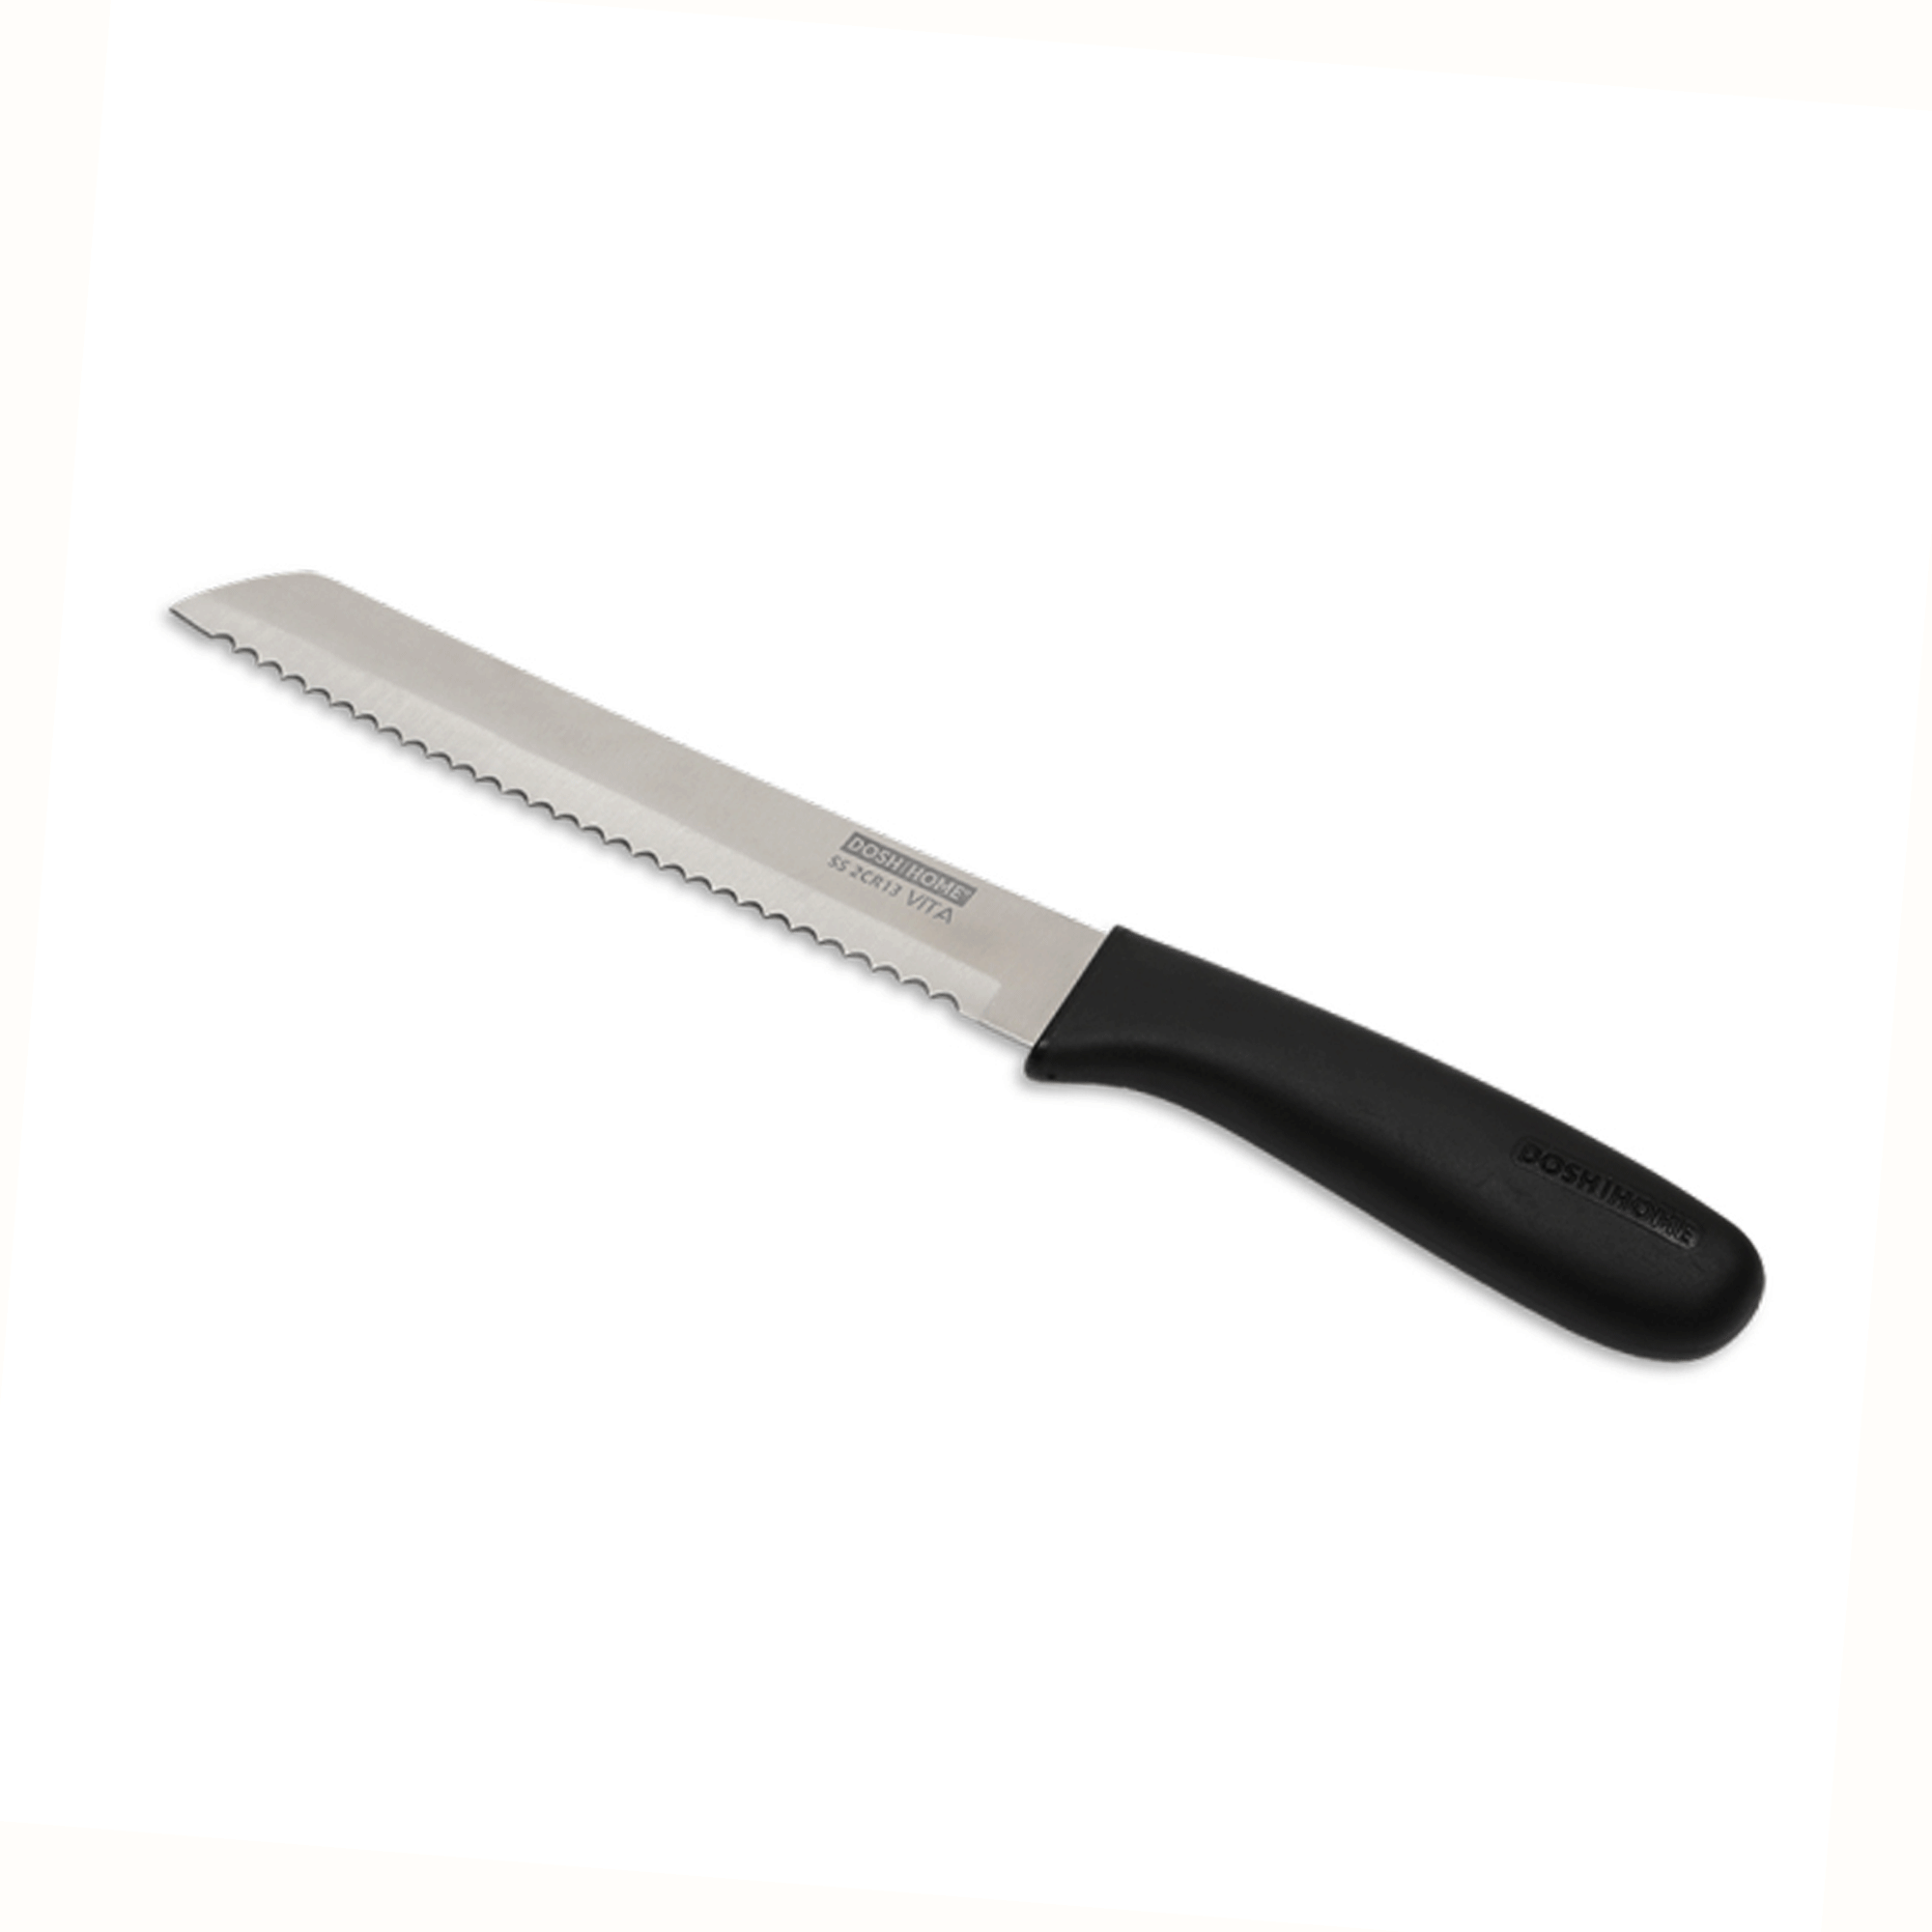  Bread knife Dosh Home Vita 800412